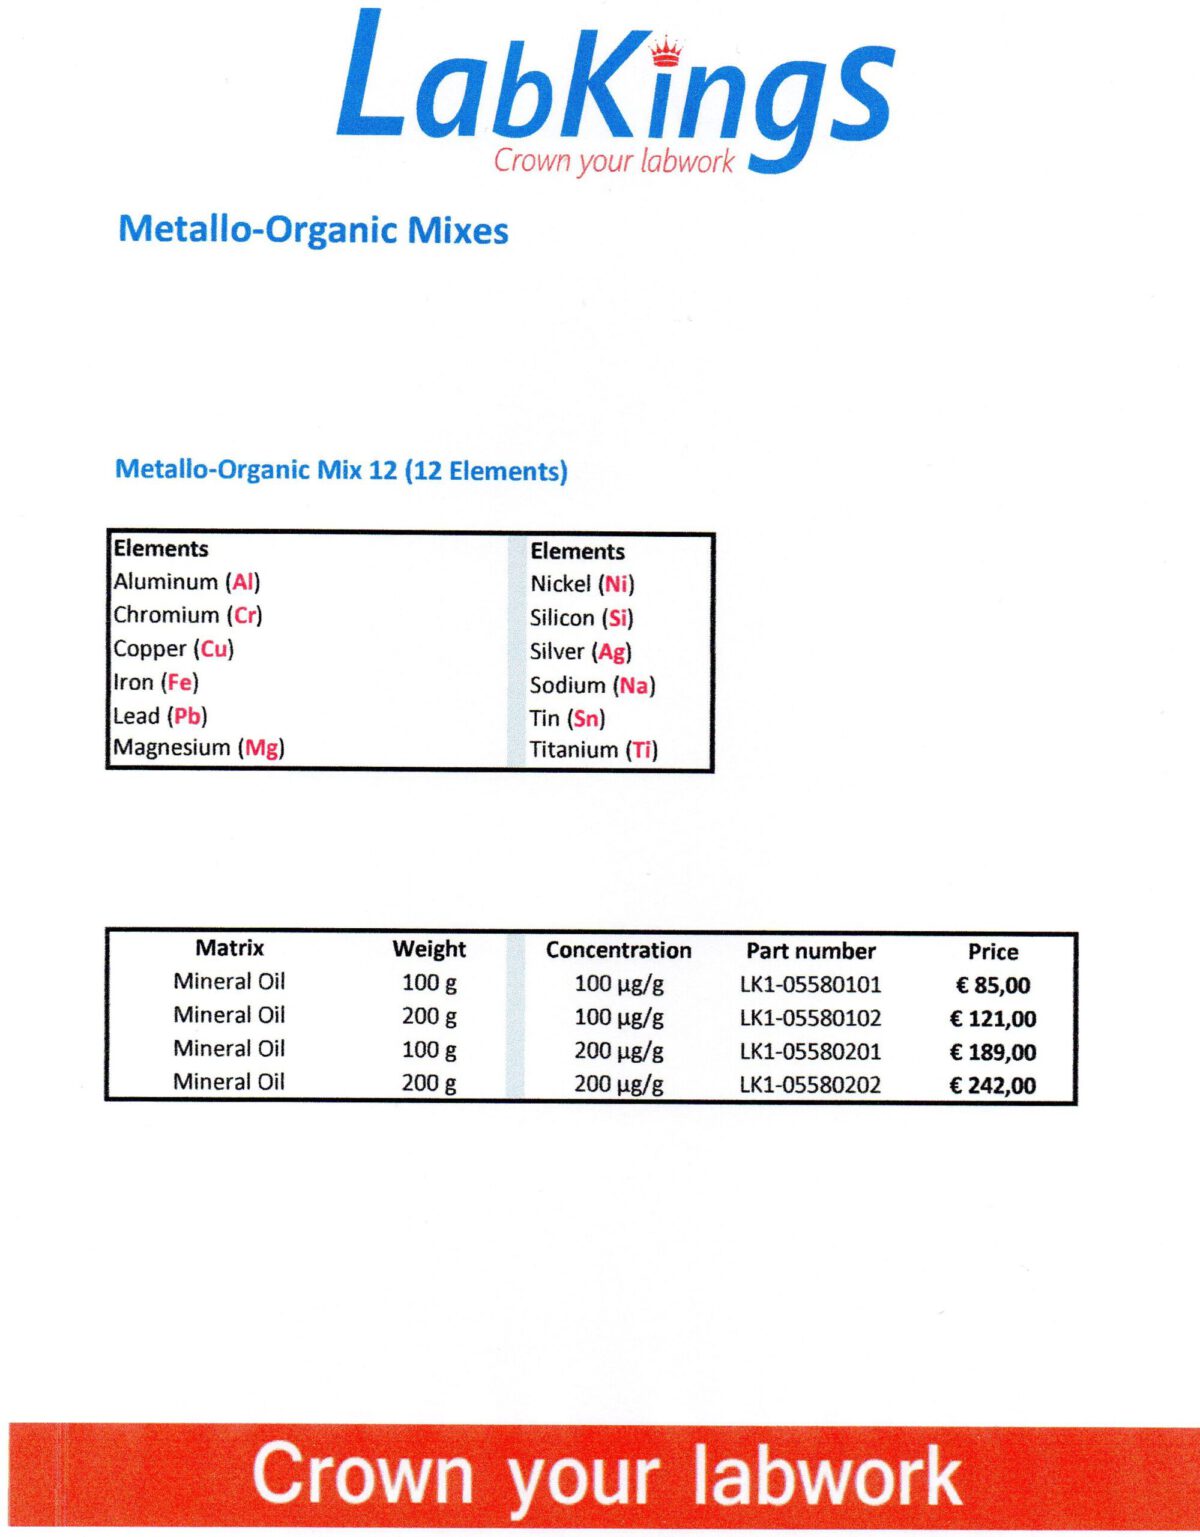 Metallo-Organic Mix 12, 200 ug/g, 100g